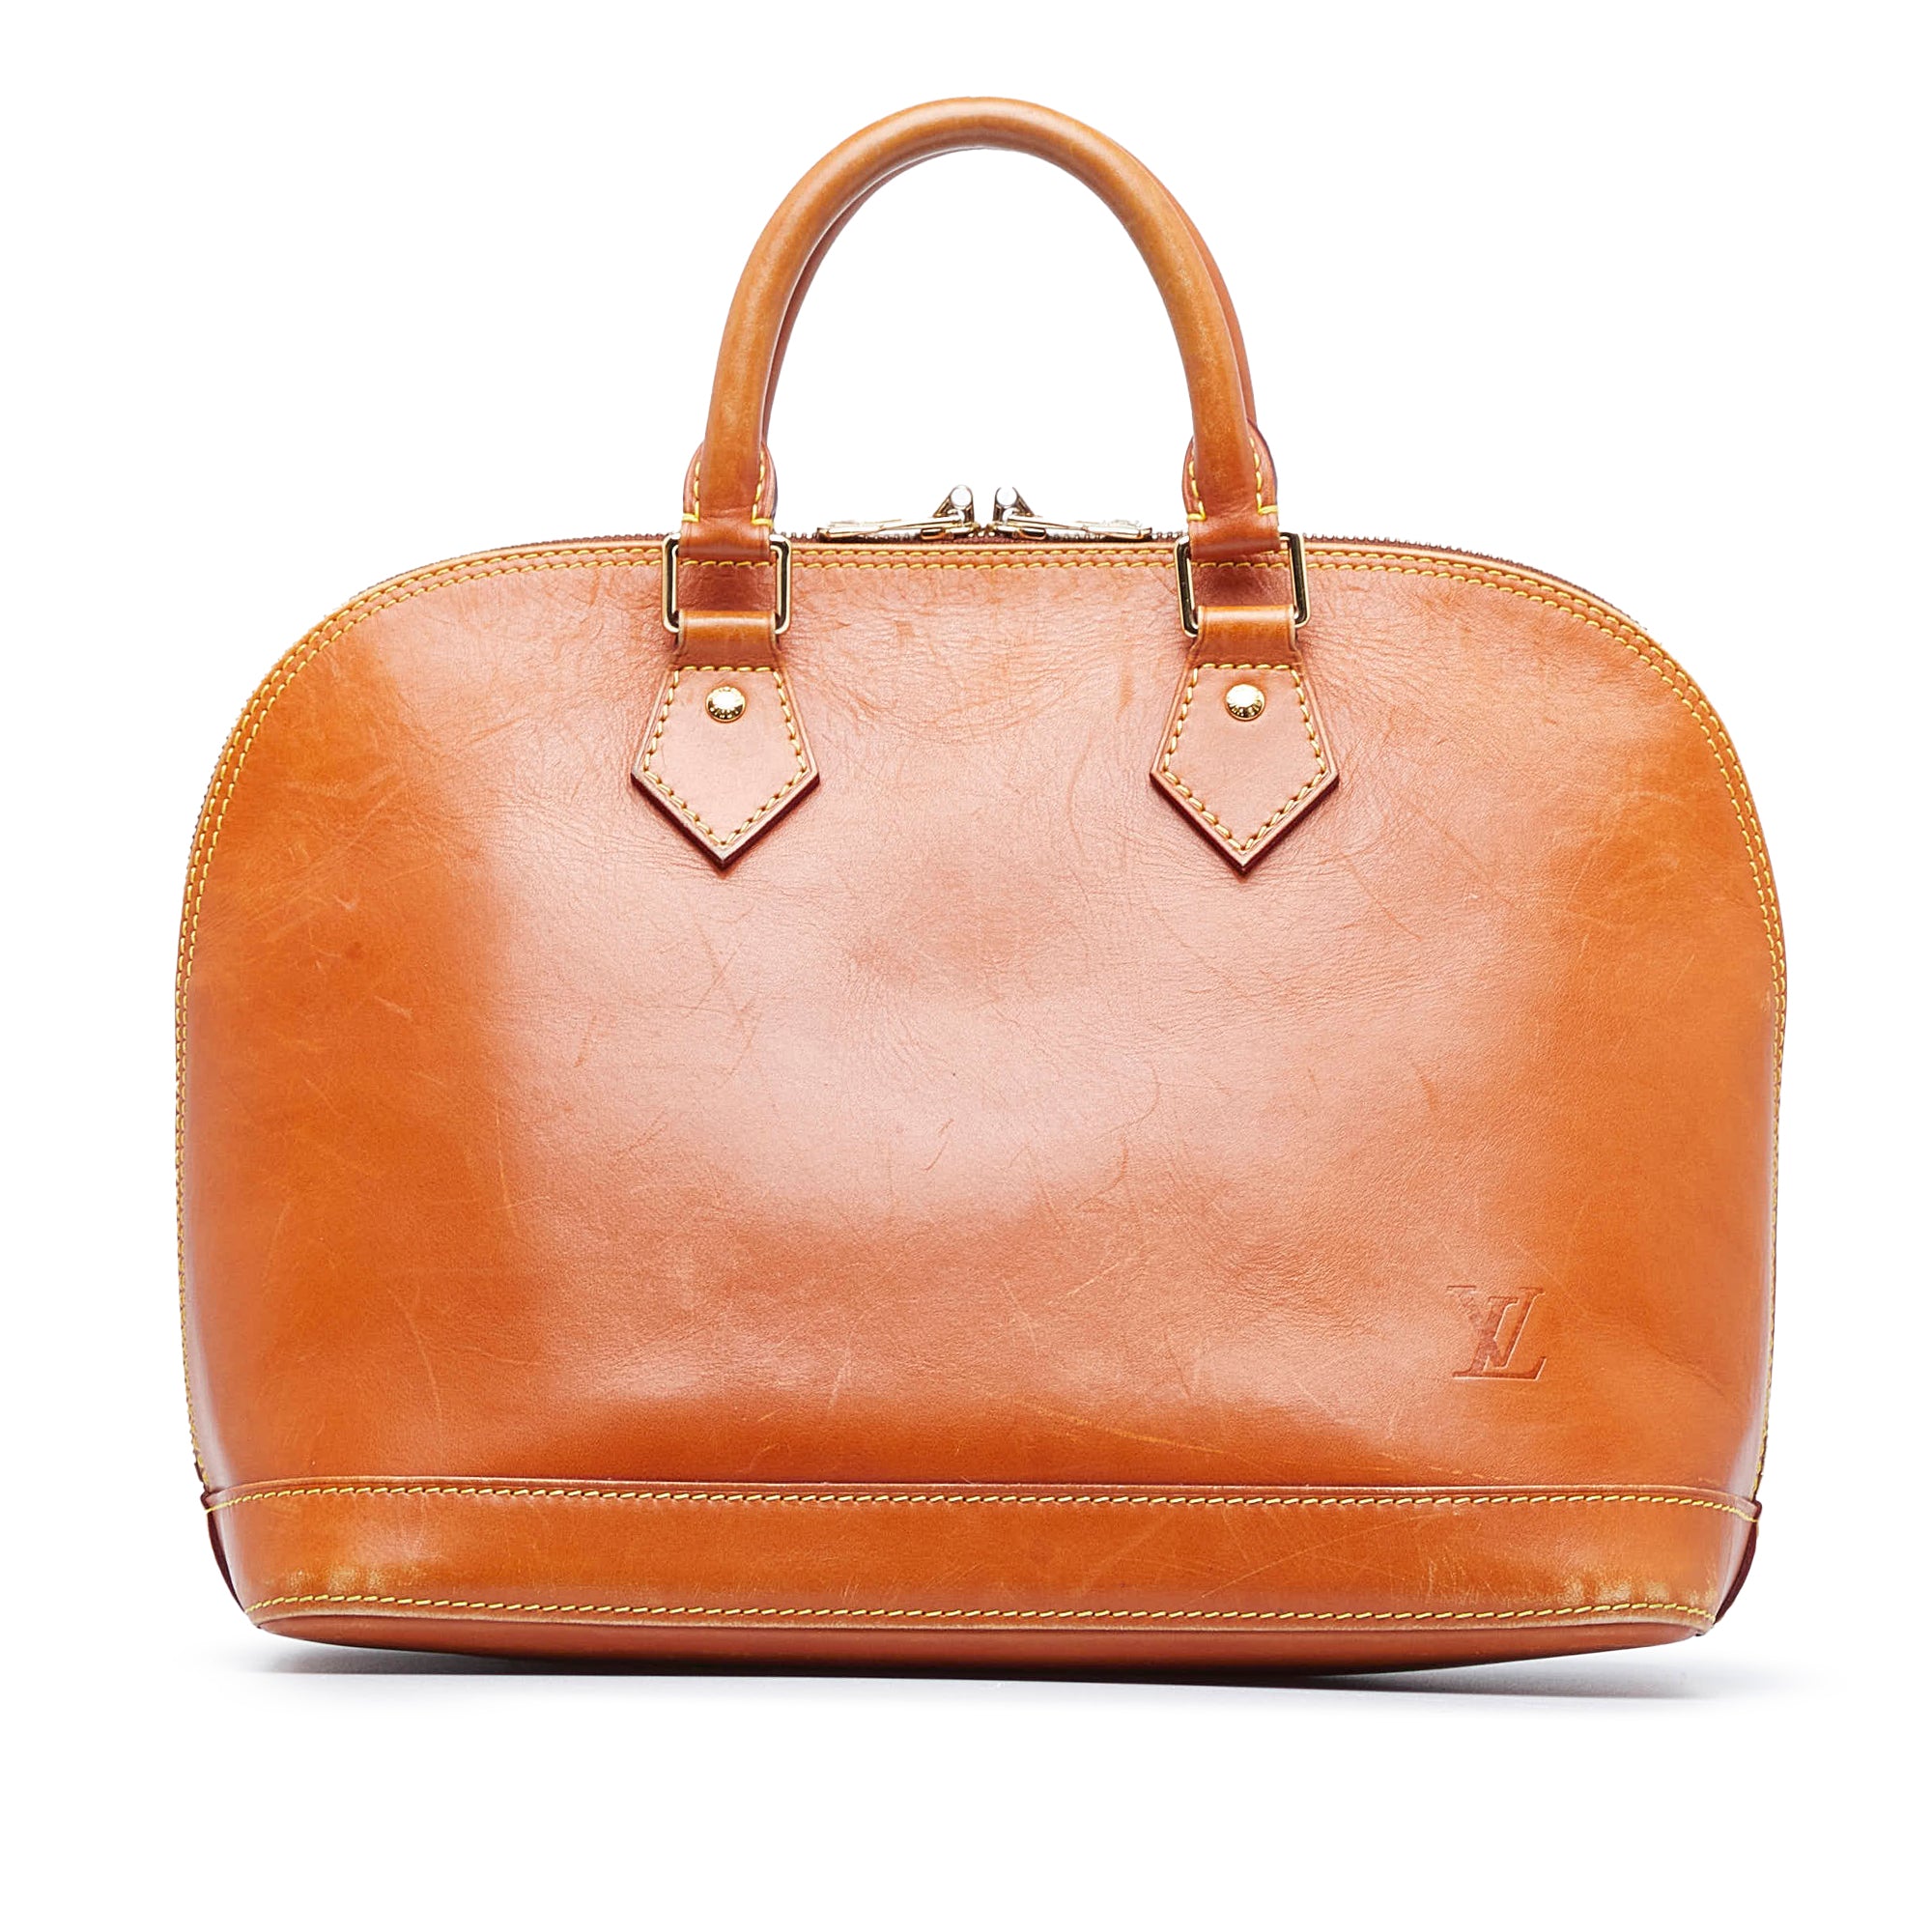 Tan Louis Vuitton Epi Leather Alma PM Bag